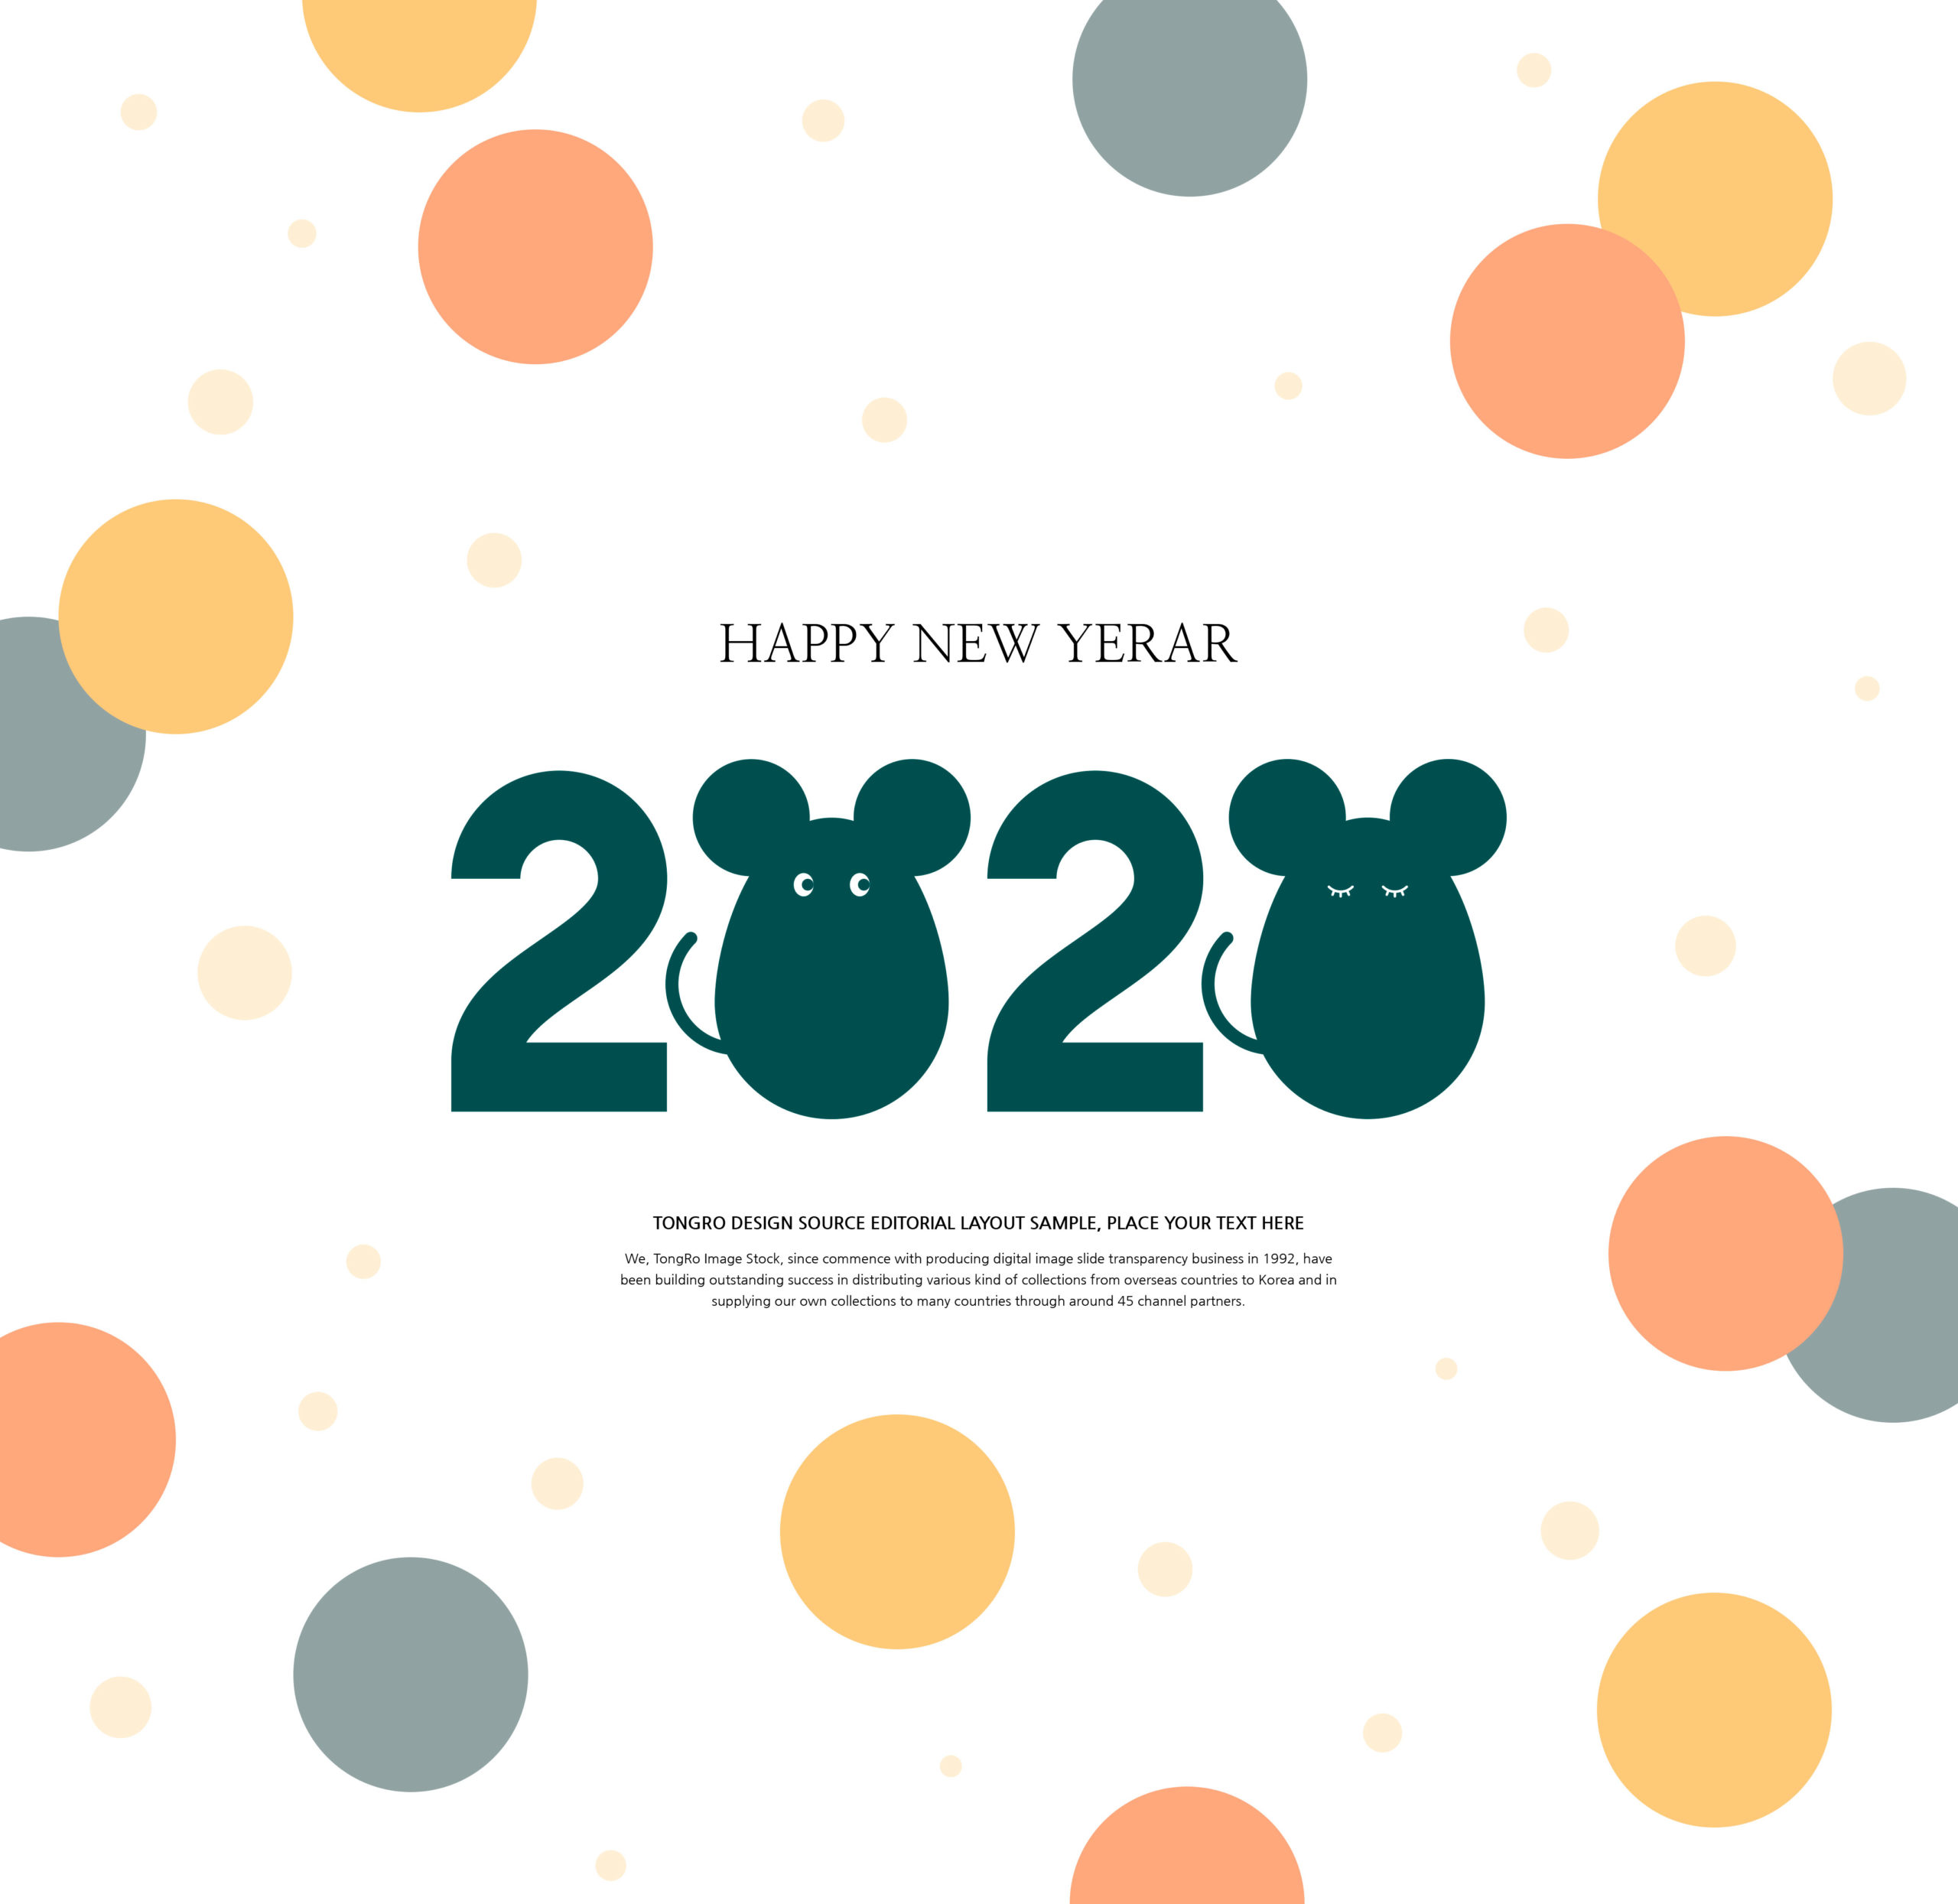 创意可爱的2020鼠年新年快乐祝语方形海报模板套装插图(6)